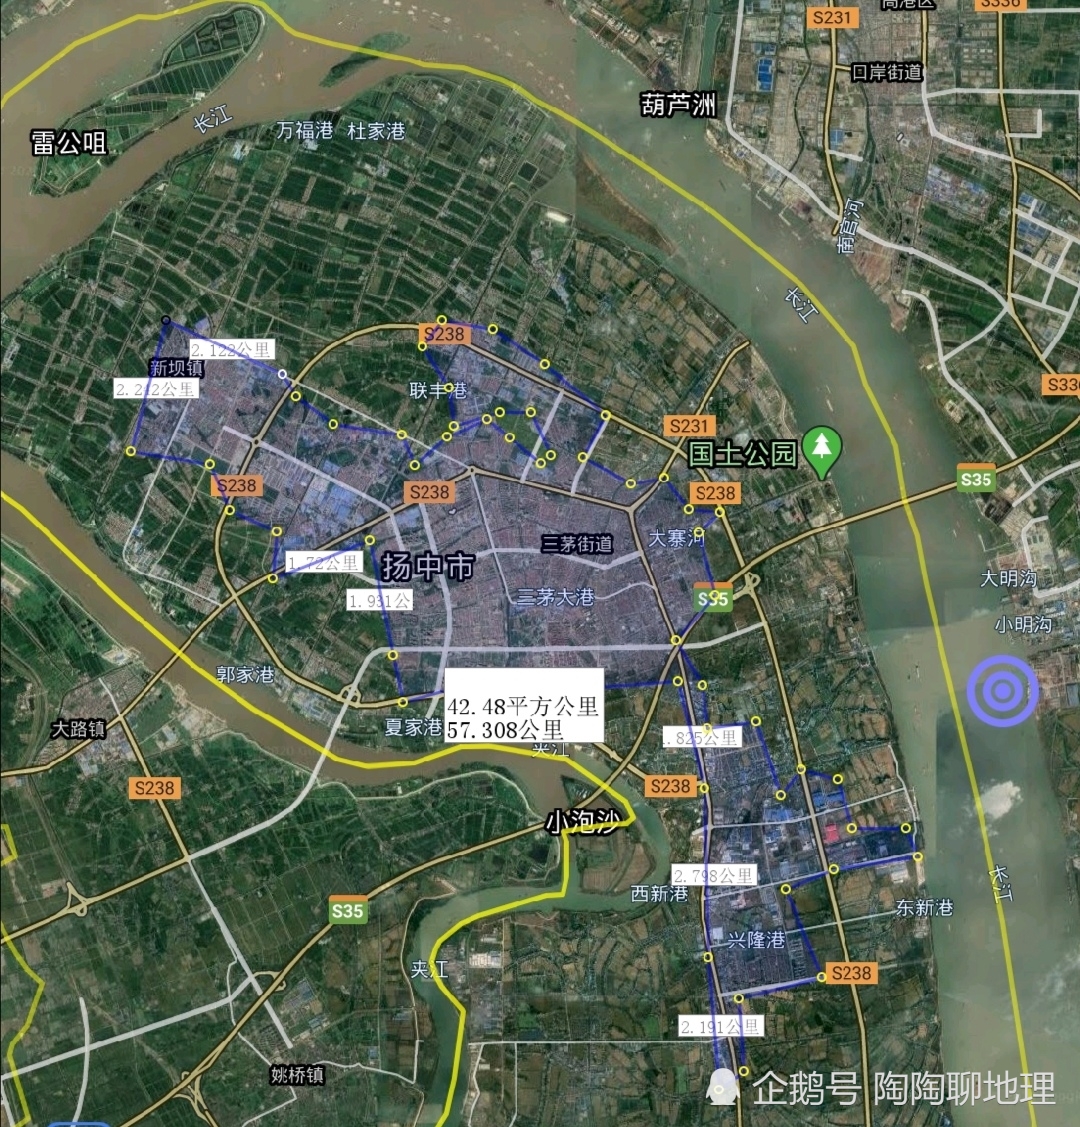 镇江市各地建成区排名,最大是京口区,最小是丹徒区,了解一下?